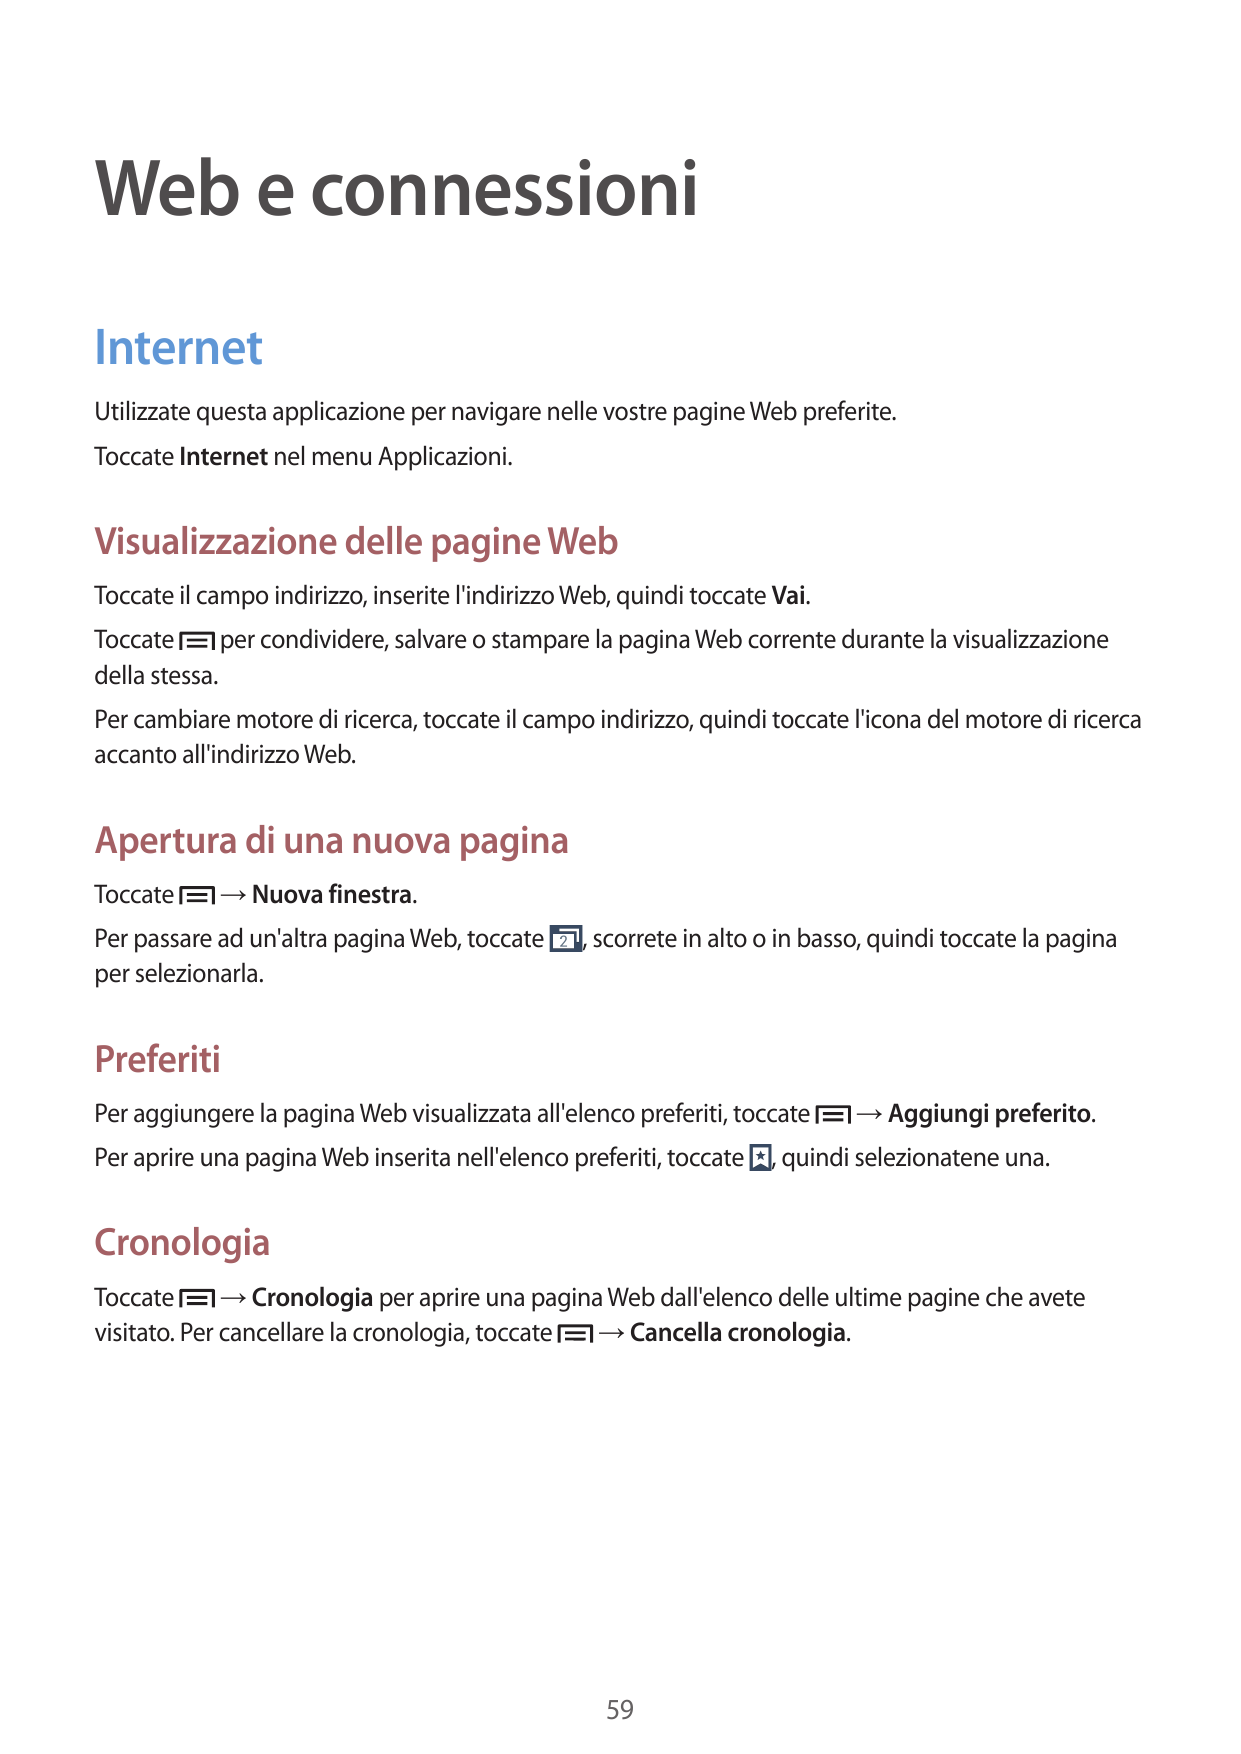 Web e connessioniInternetUtilizzate questa applicazione per navigare nelle vostre pagine Web preferite.Toccate Internet nel menu